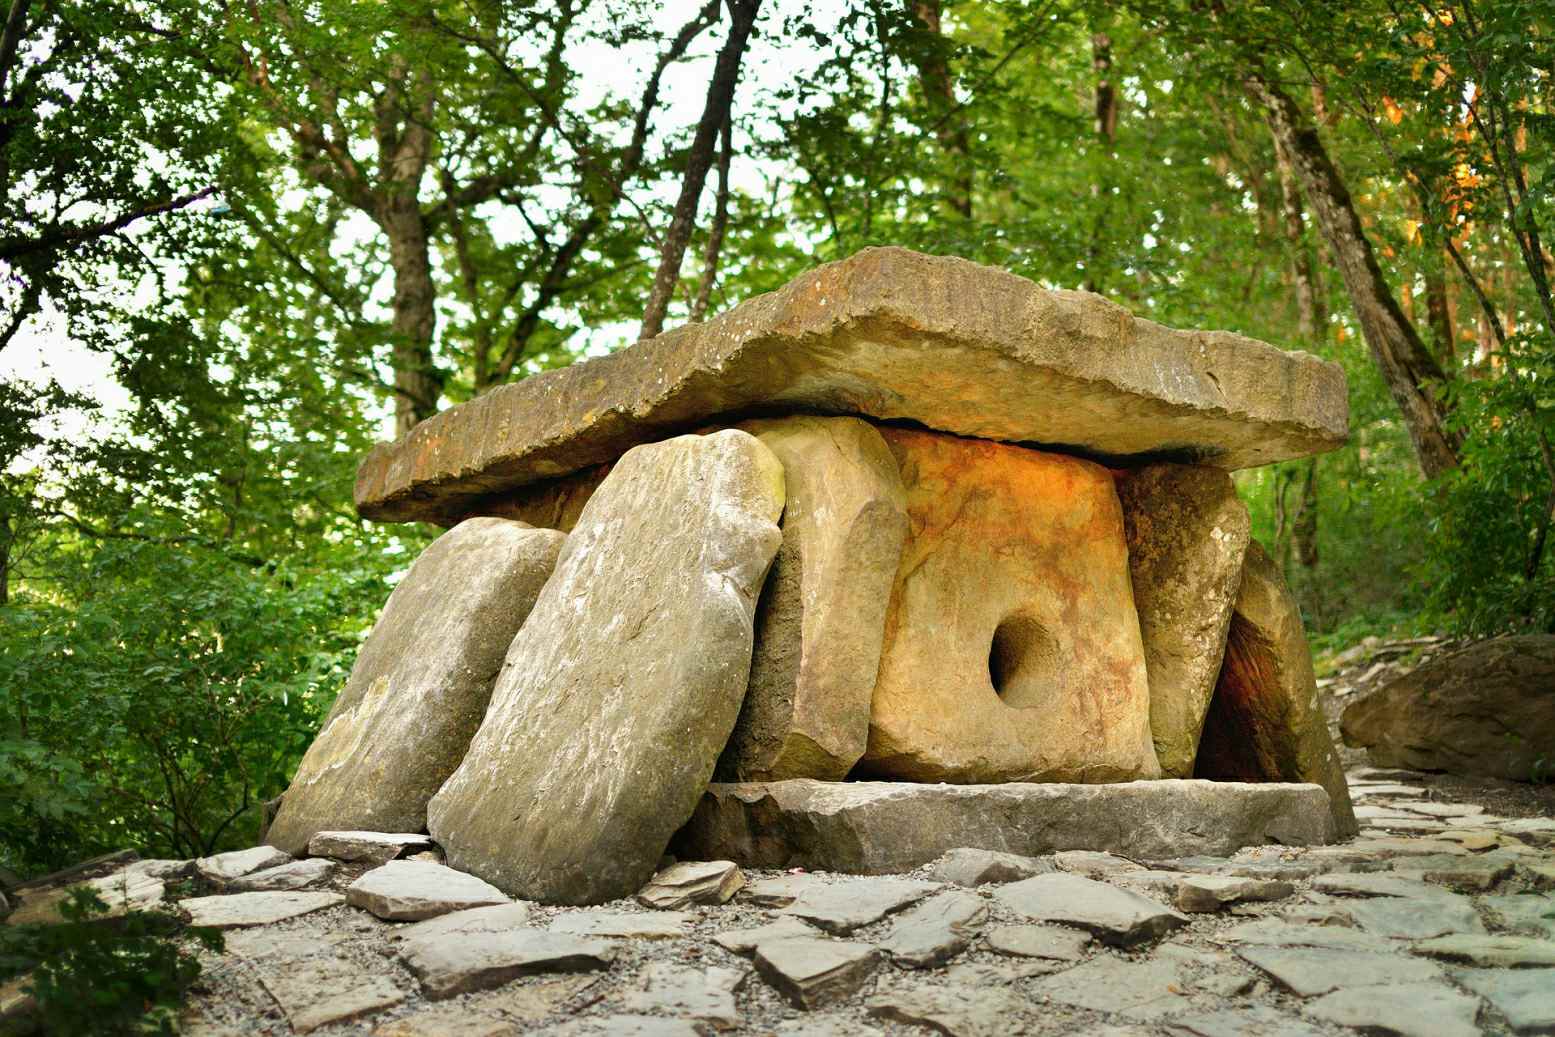 Ny dolmens fandevenana dia nitohy nampiasaina tamin'ny faramparan'ny alimo varahina sy tamin'ny andro voalohan'ny vy